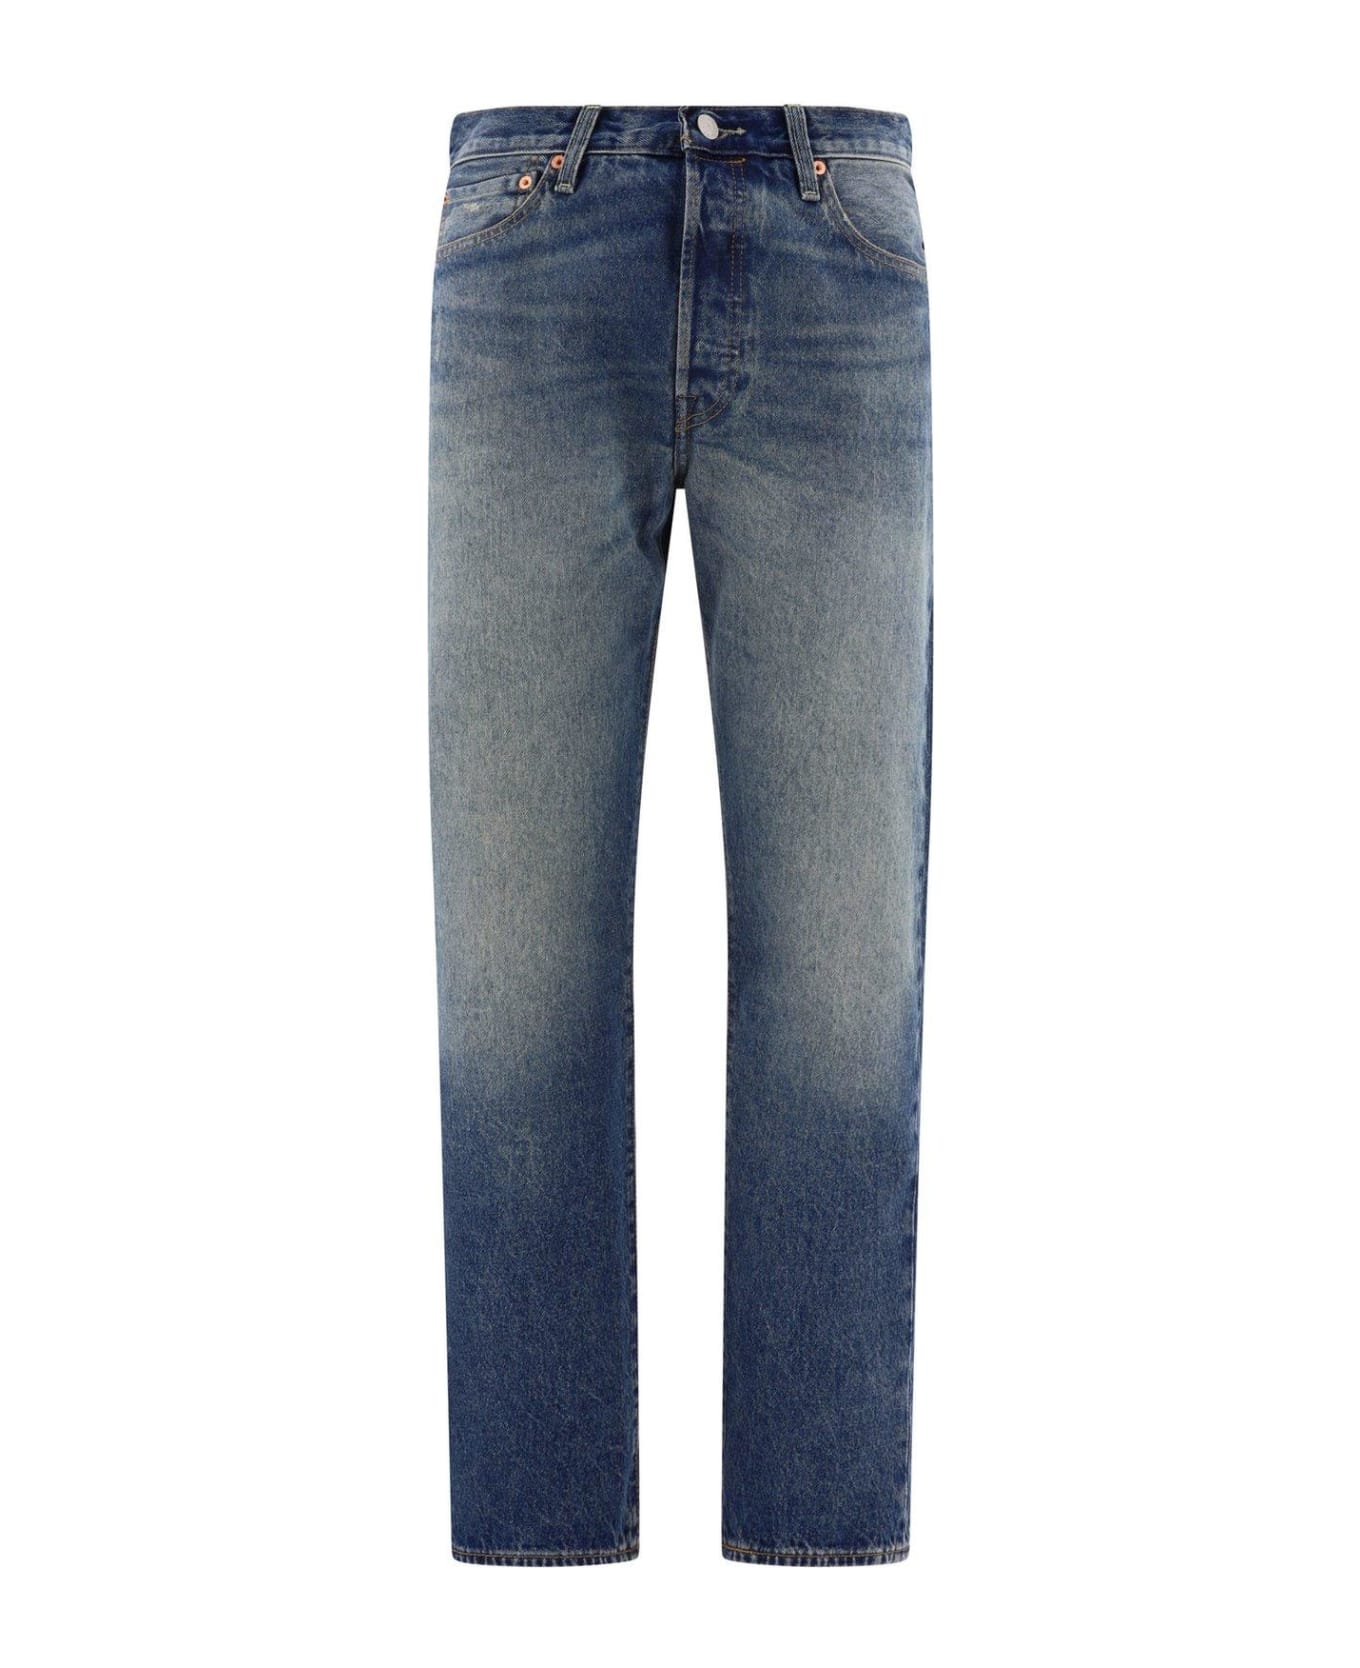 Levi's 501 '54 Mid Rise Denim Jeans - Blue